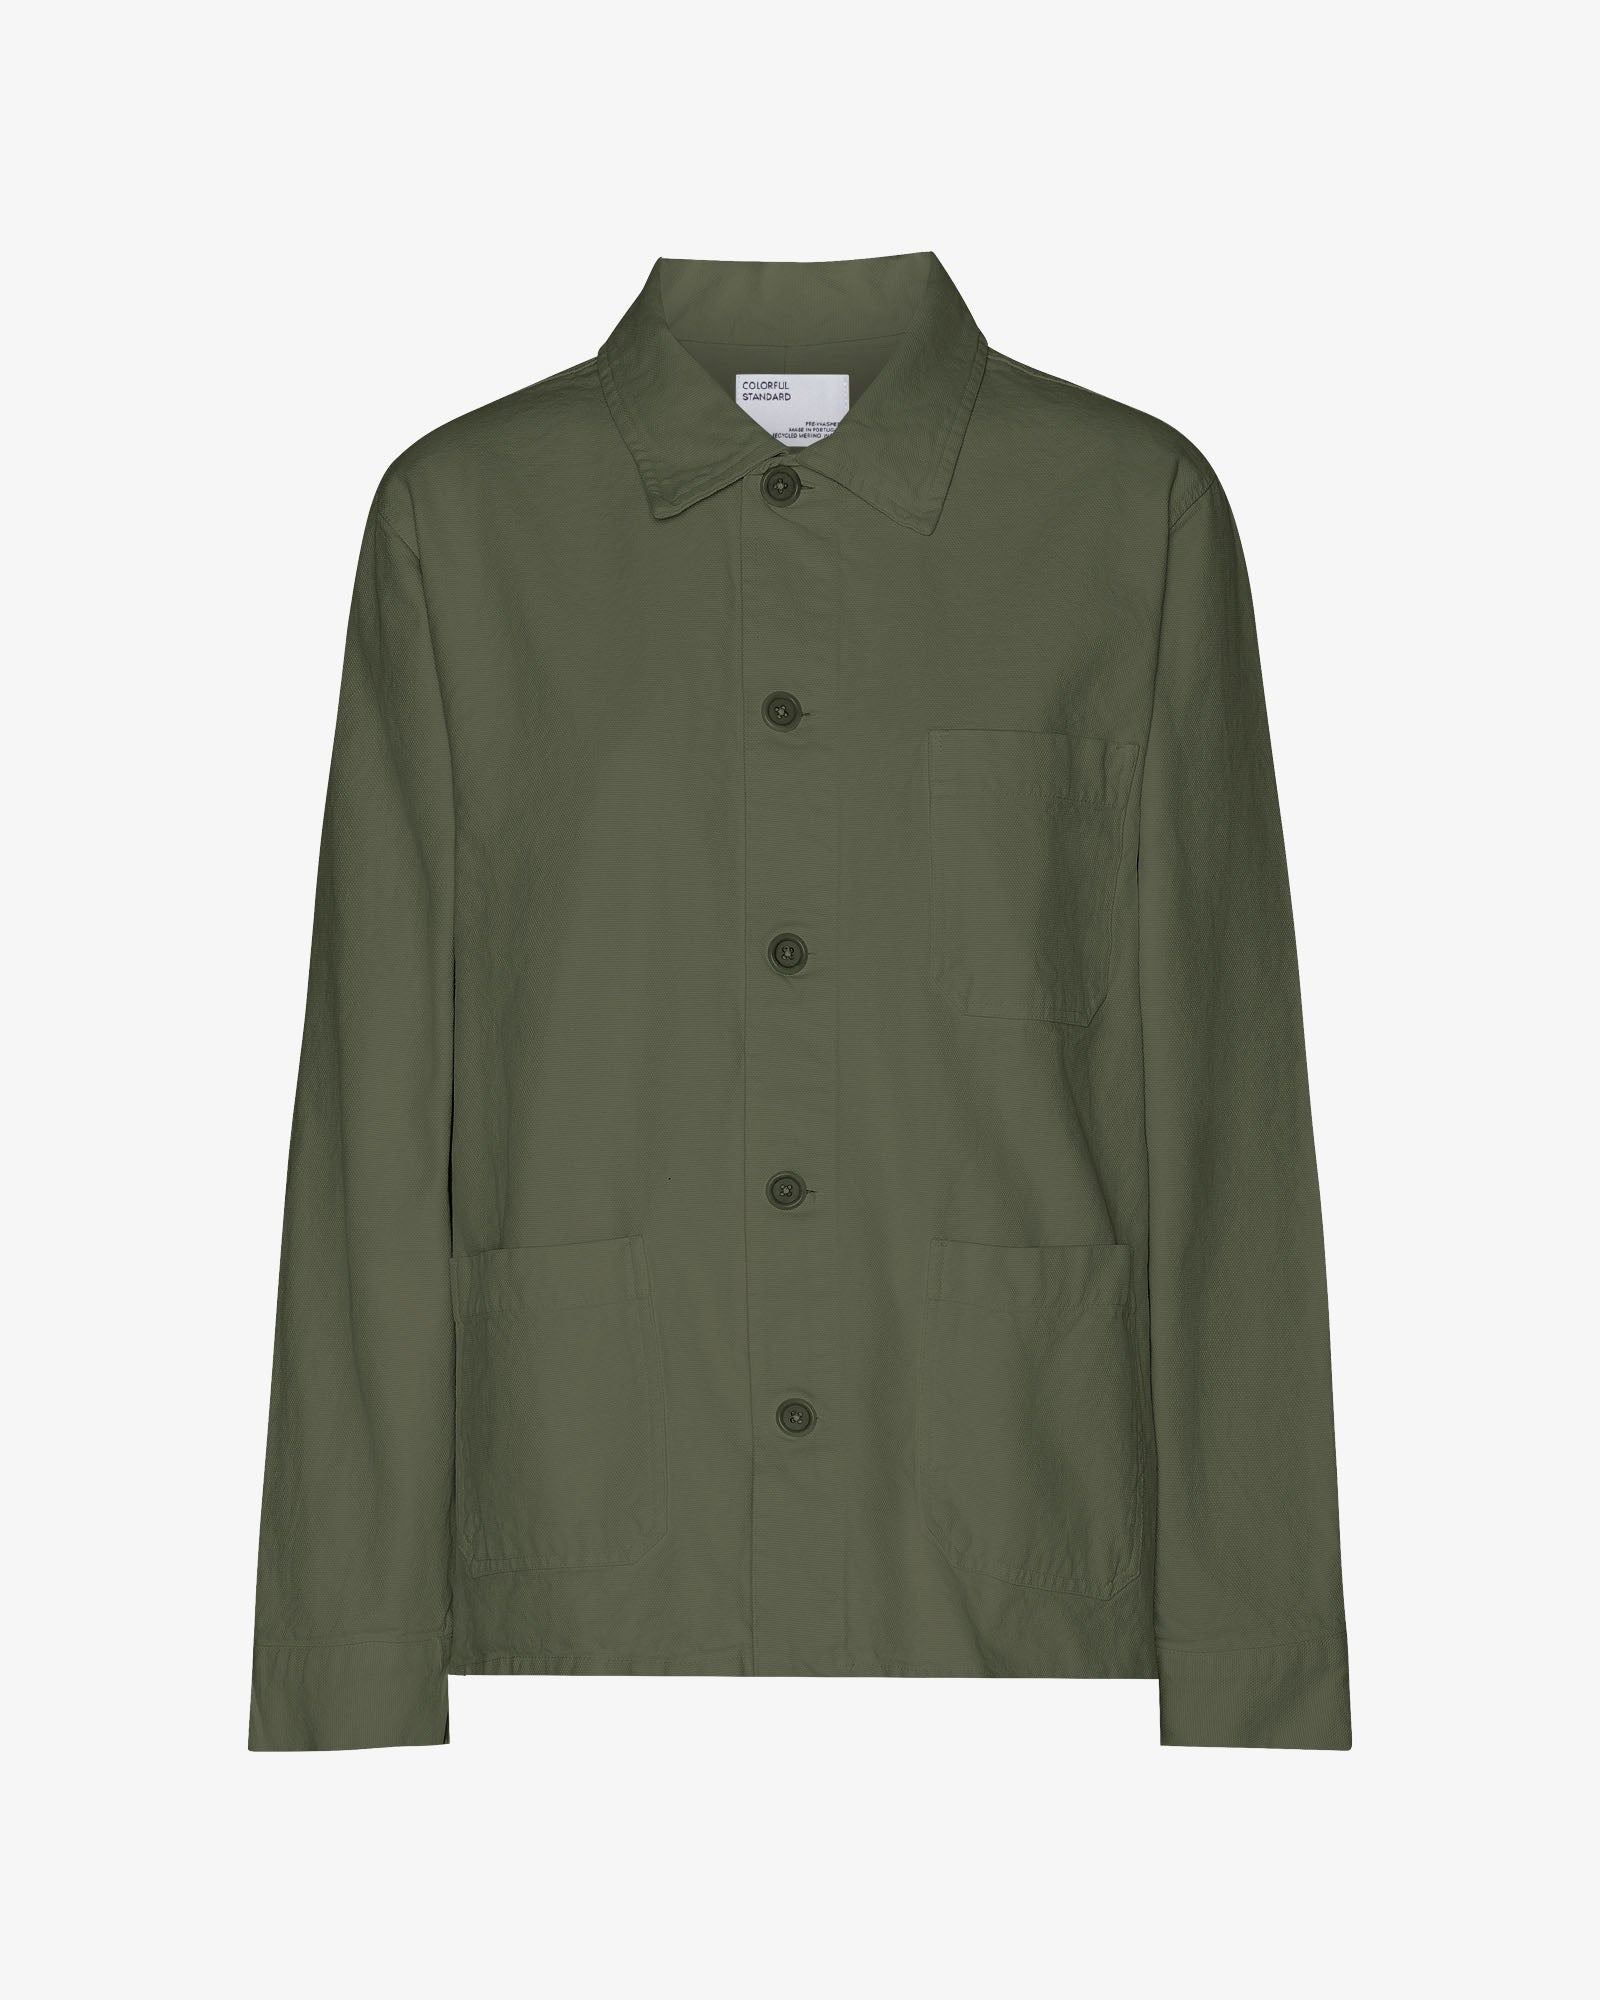 Organic Workwear Jacket - Dusty Olive